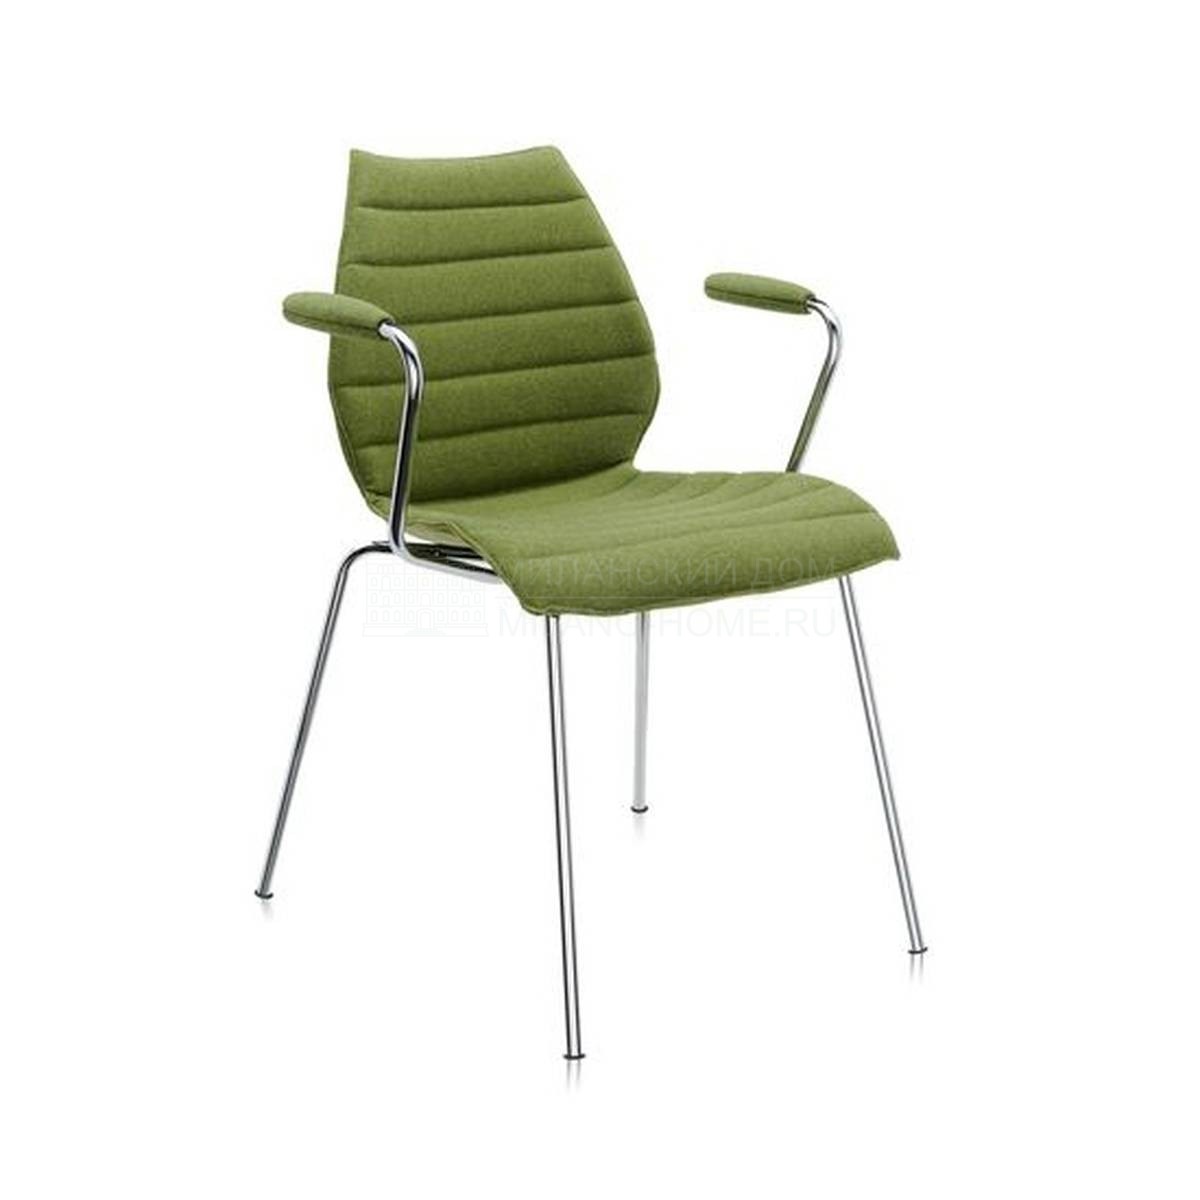 Полукресло Maui chair soft из Италии фабрики KARTELL